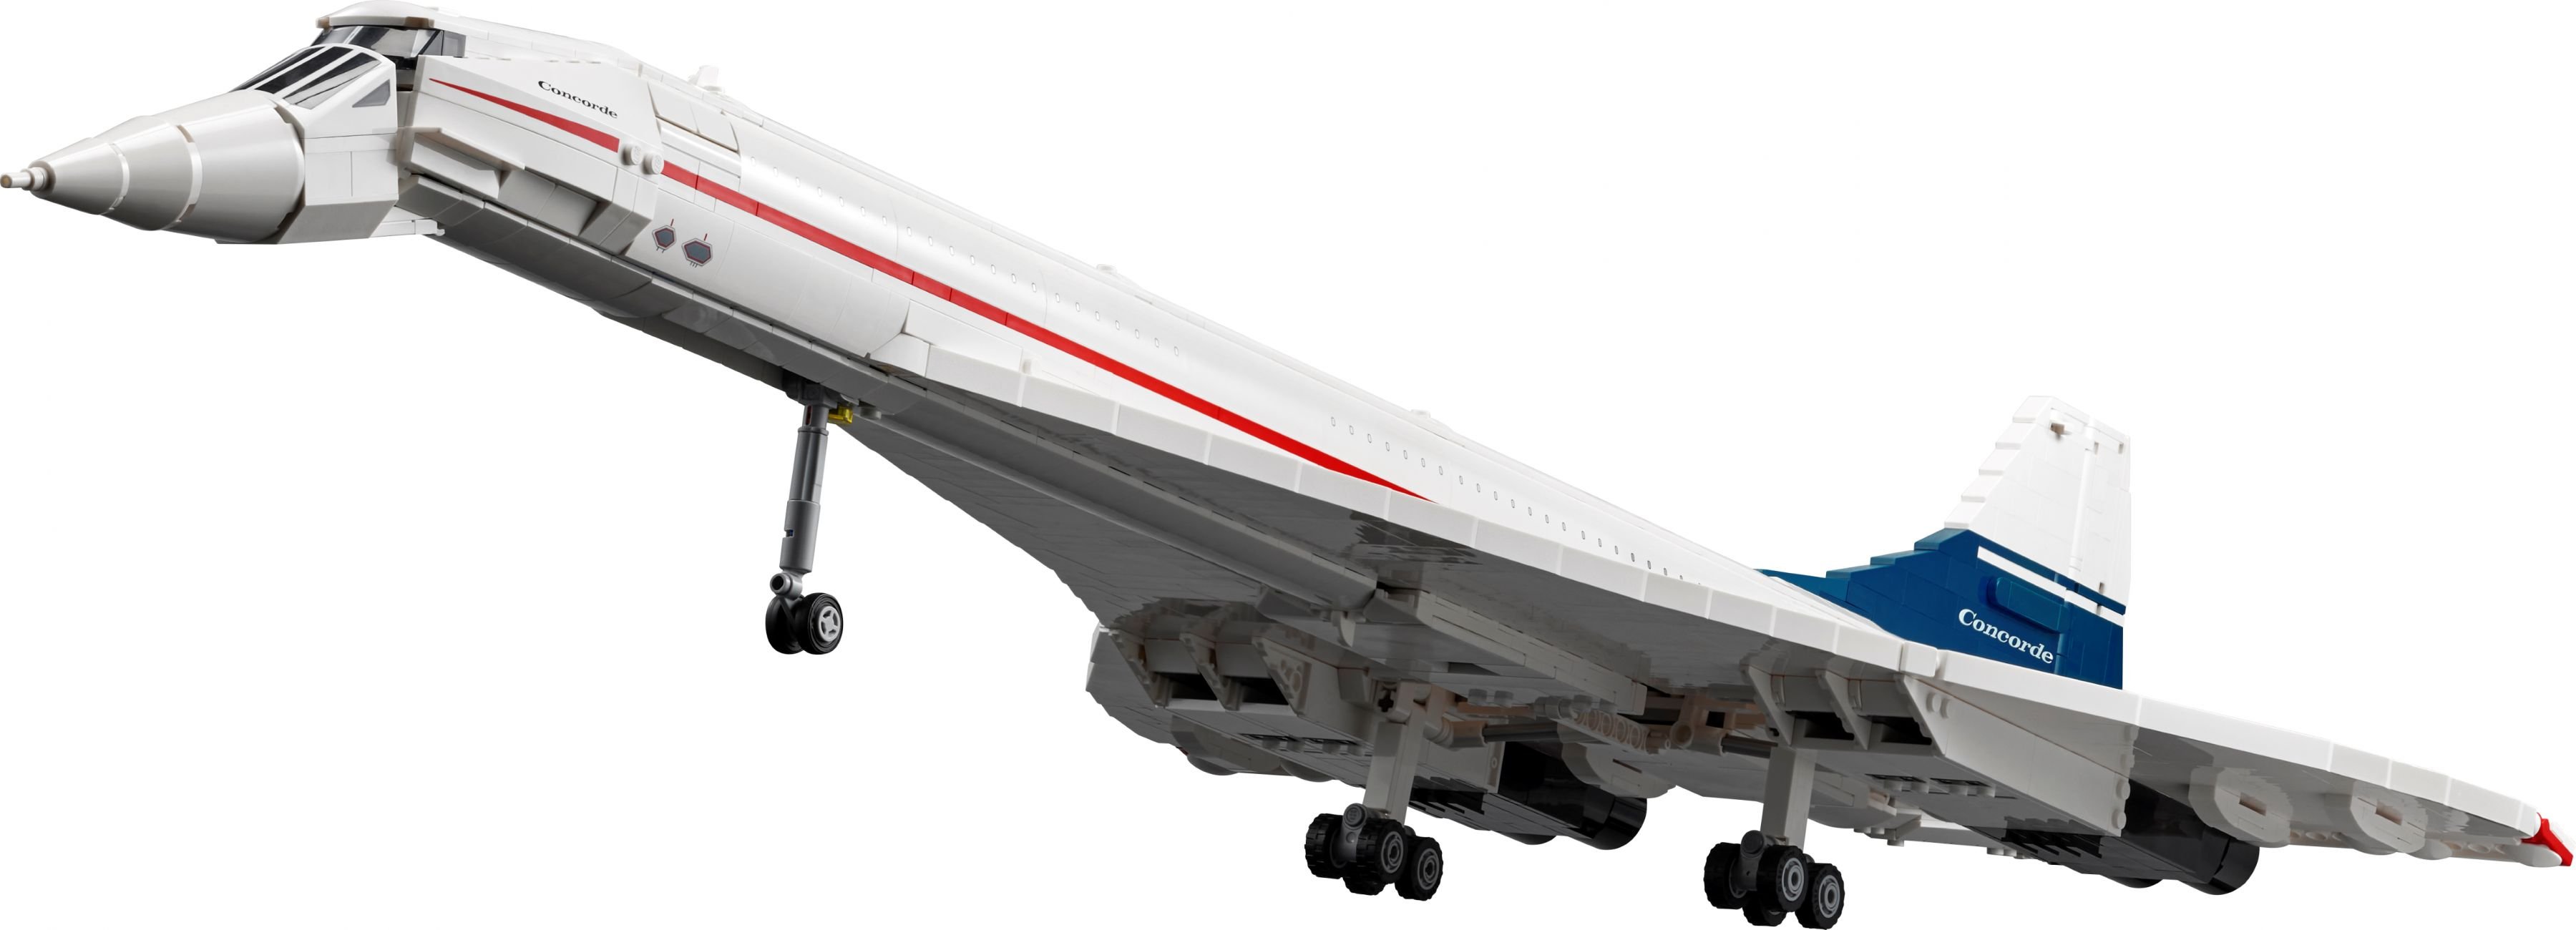 LEGO Advanced Models 10318 Concorde LEGO_10318_alt2.jpg